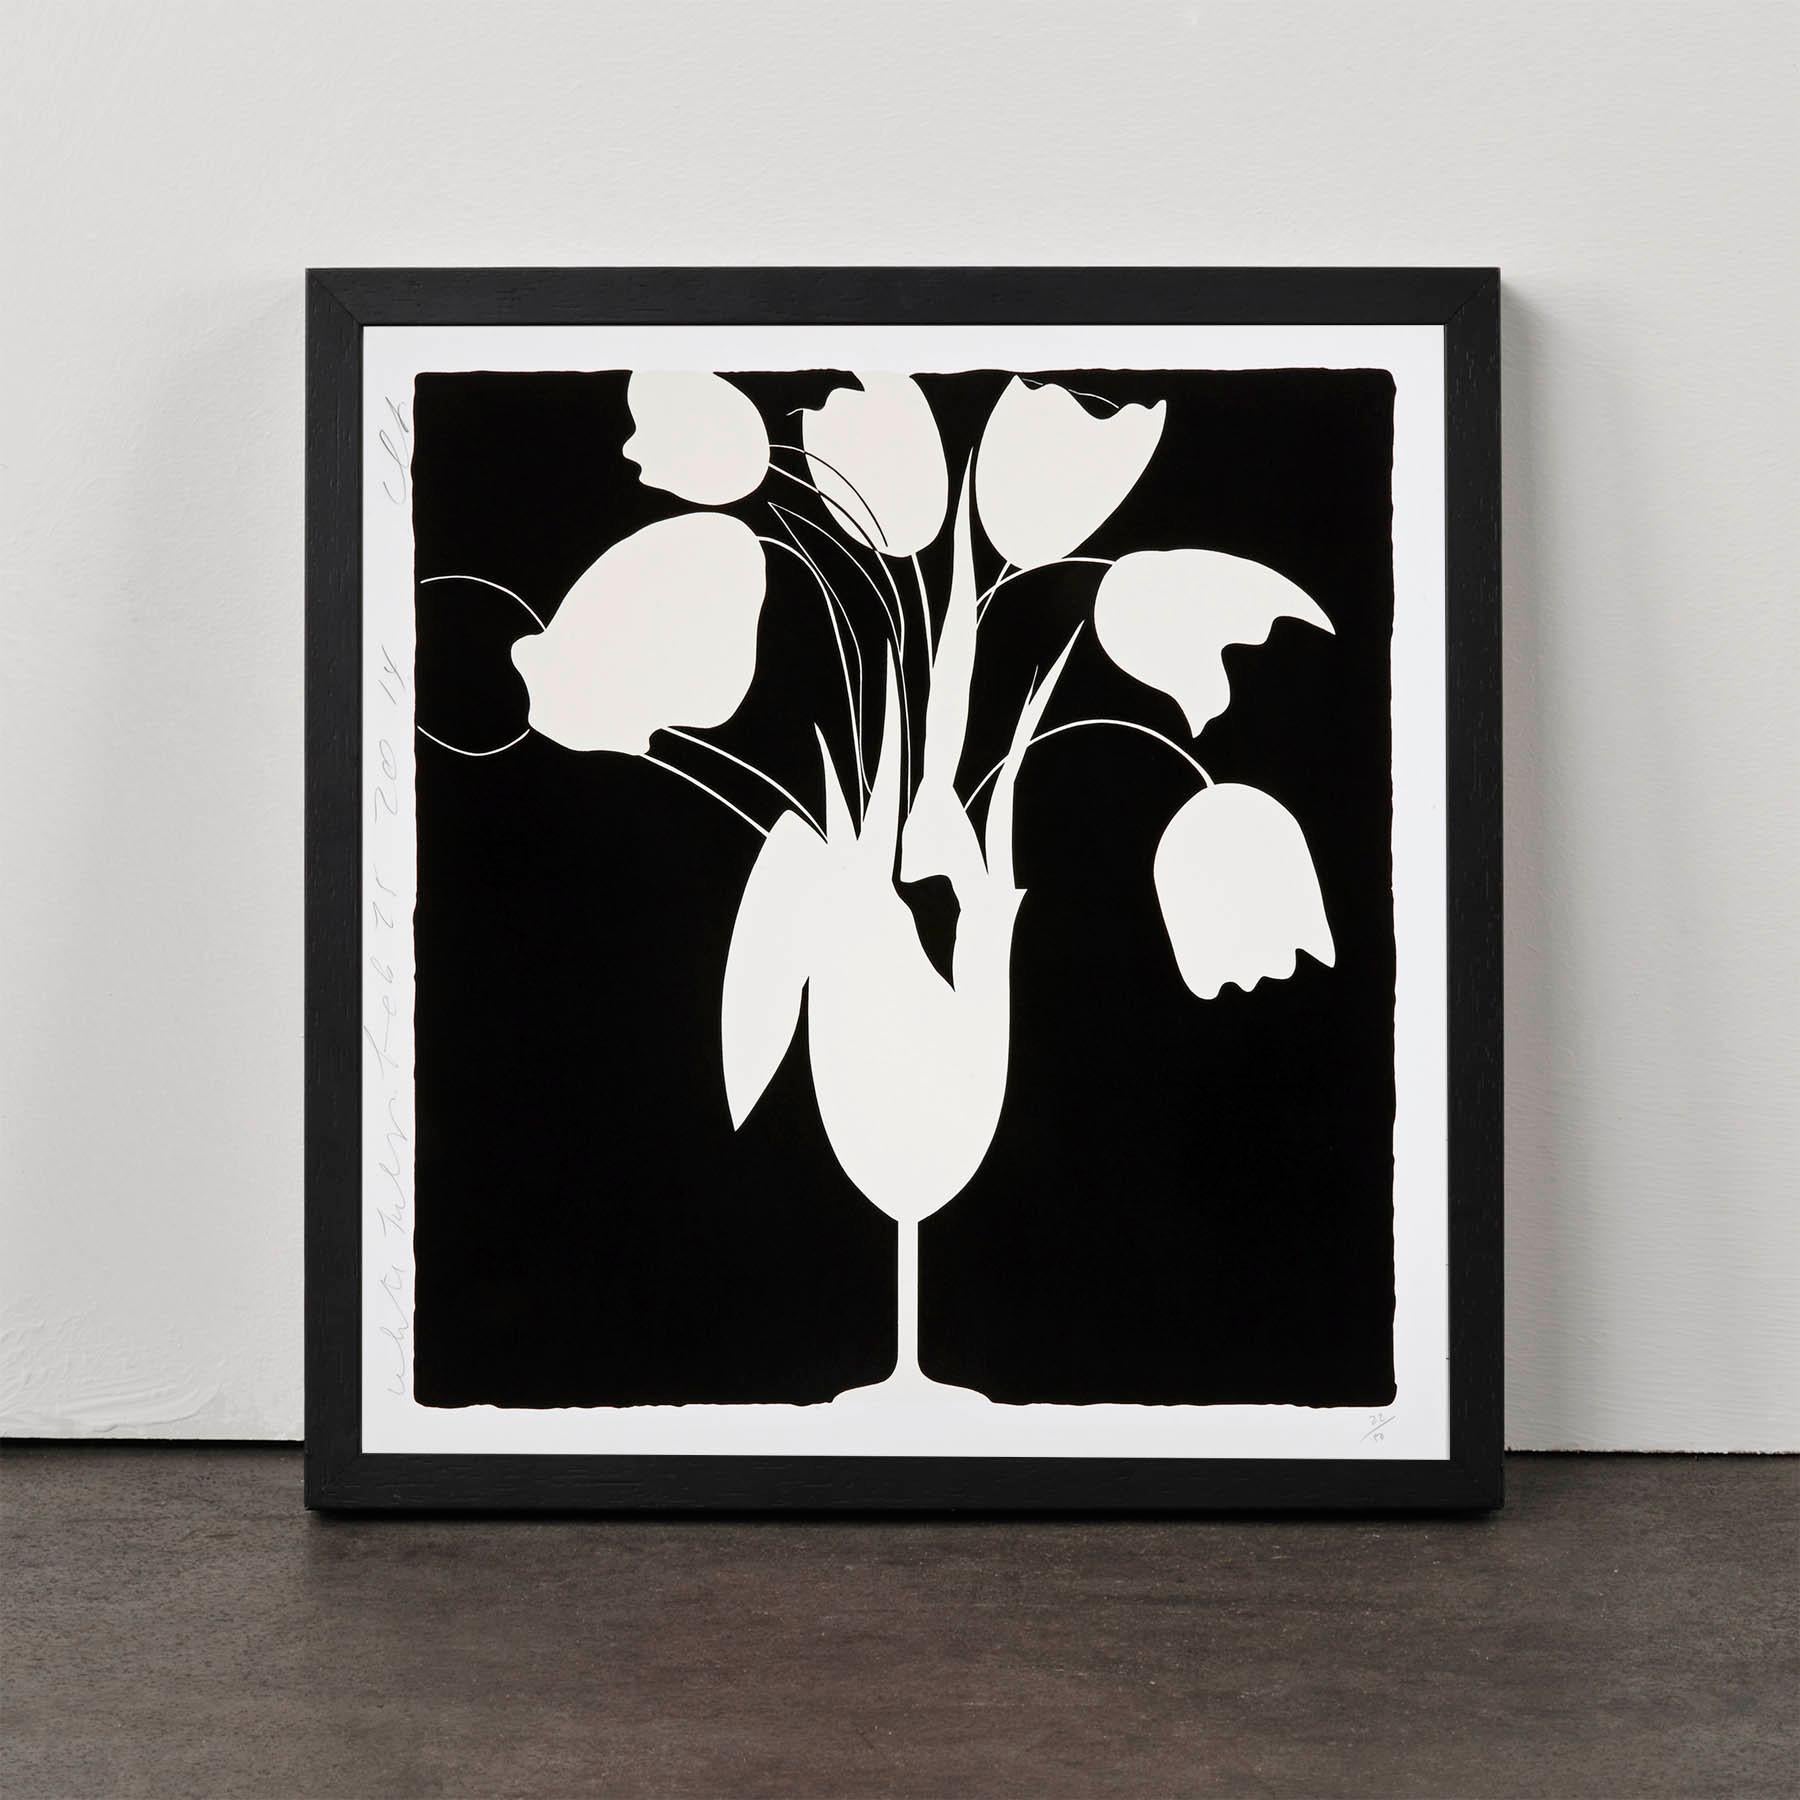 Tulips et vase blancs, 25 février, Contemporain, 21e siècle, sérigraphie, tulipes - Print de Donald Sultan